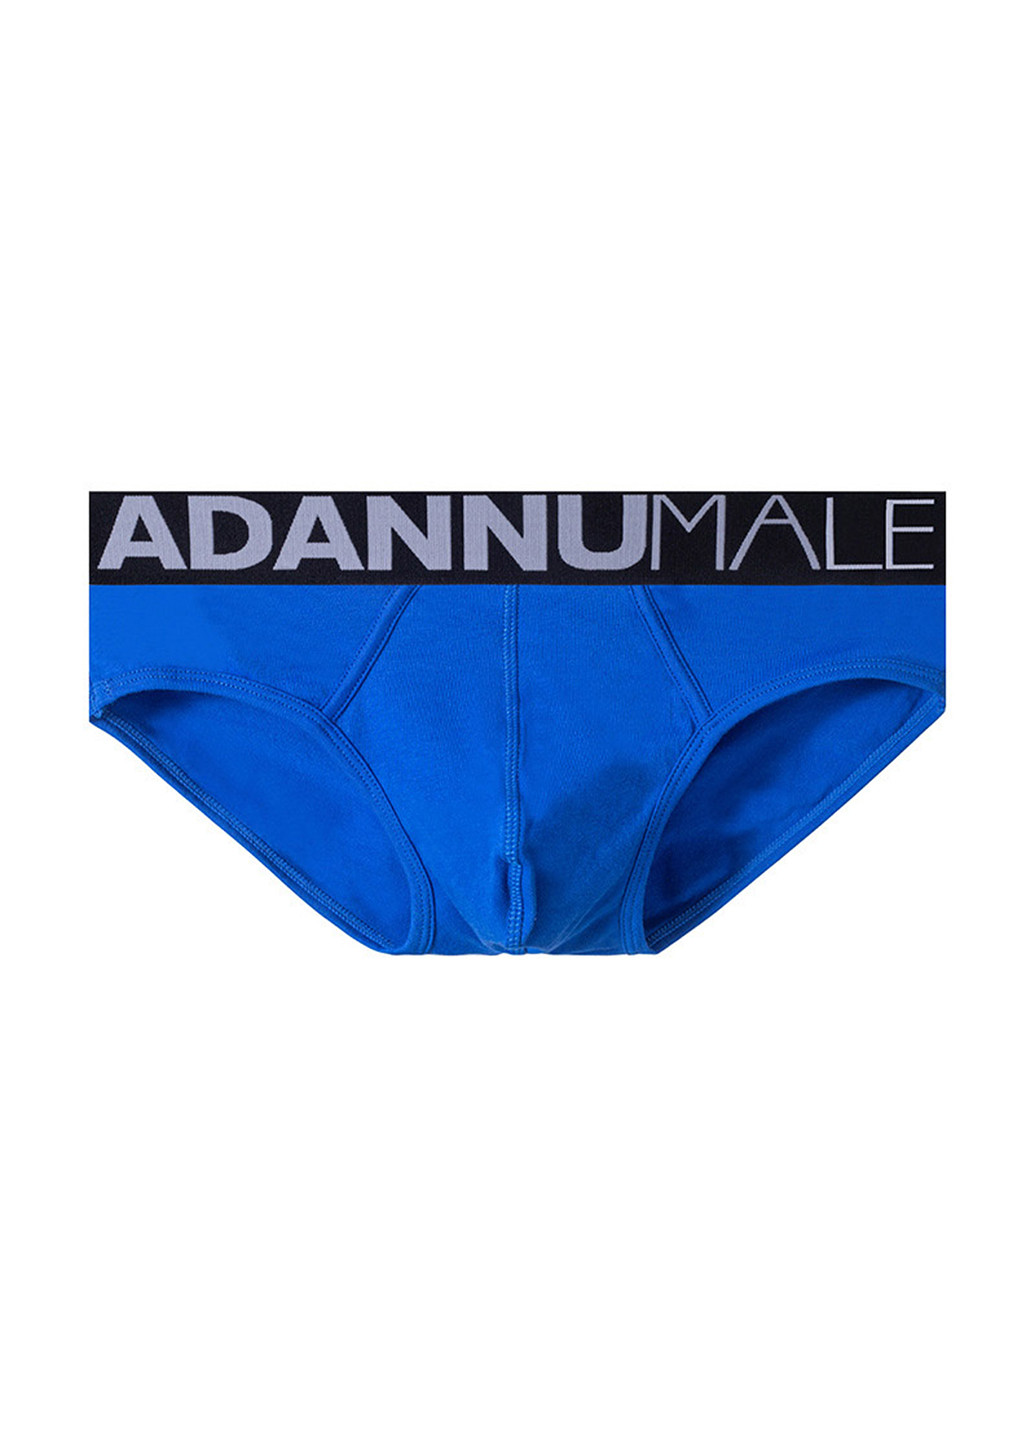 Мужские трусы брифы Синий Мужское белое белье Adannu (260360052)